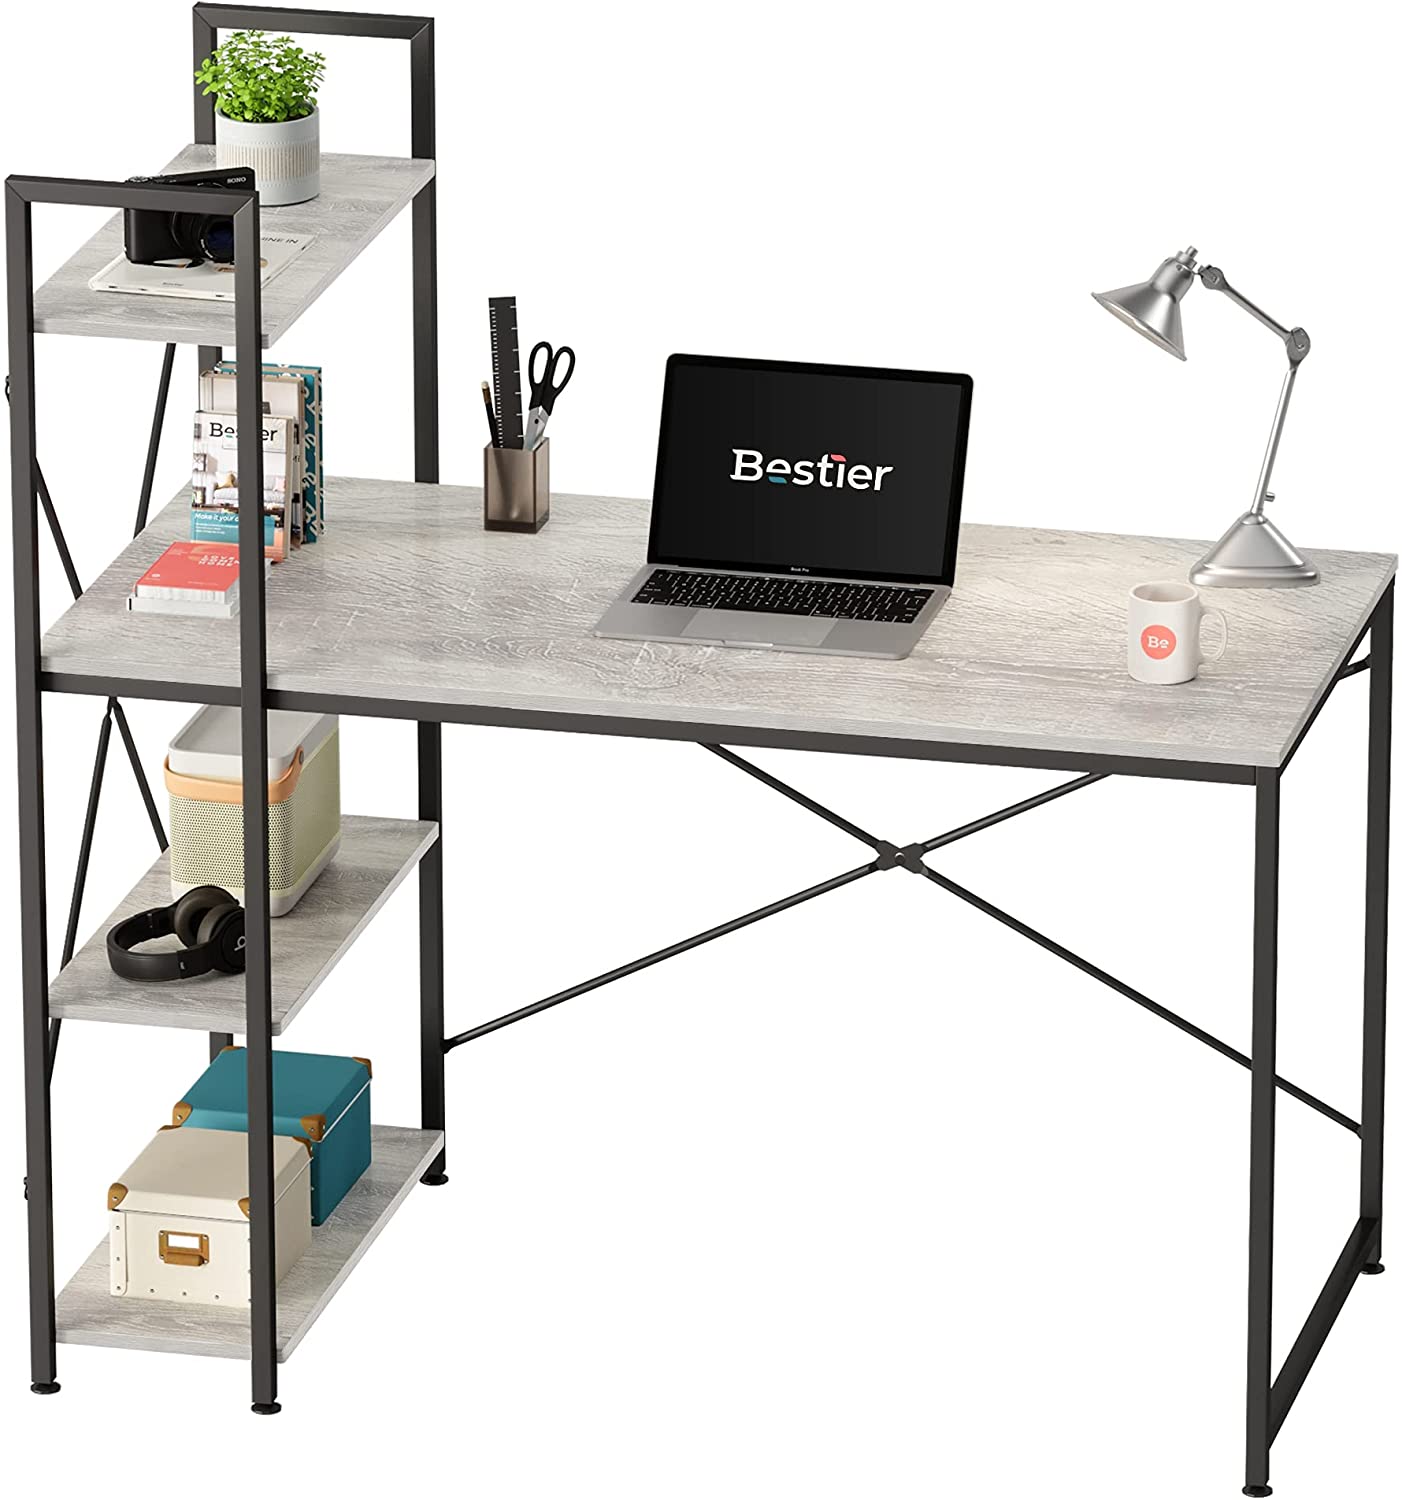 Nowy projekt Duży rozmiar Narożny nowoczesny schowek do nauki Pisanie Oszczędność miejsca dla domowego biura Drewniane biurko komputerowe z półką na książki